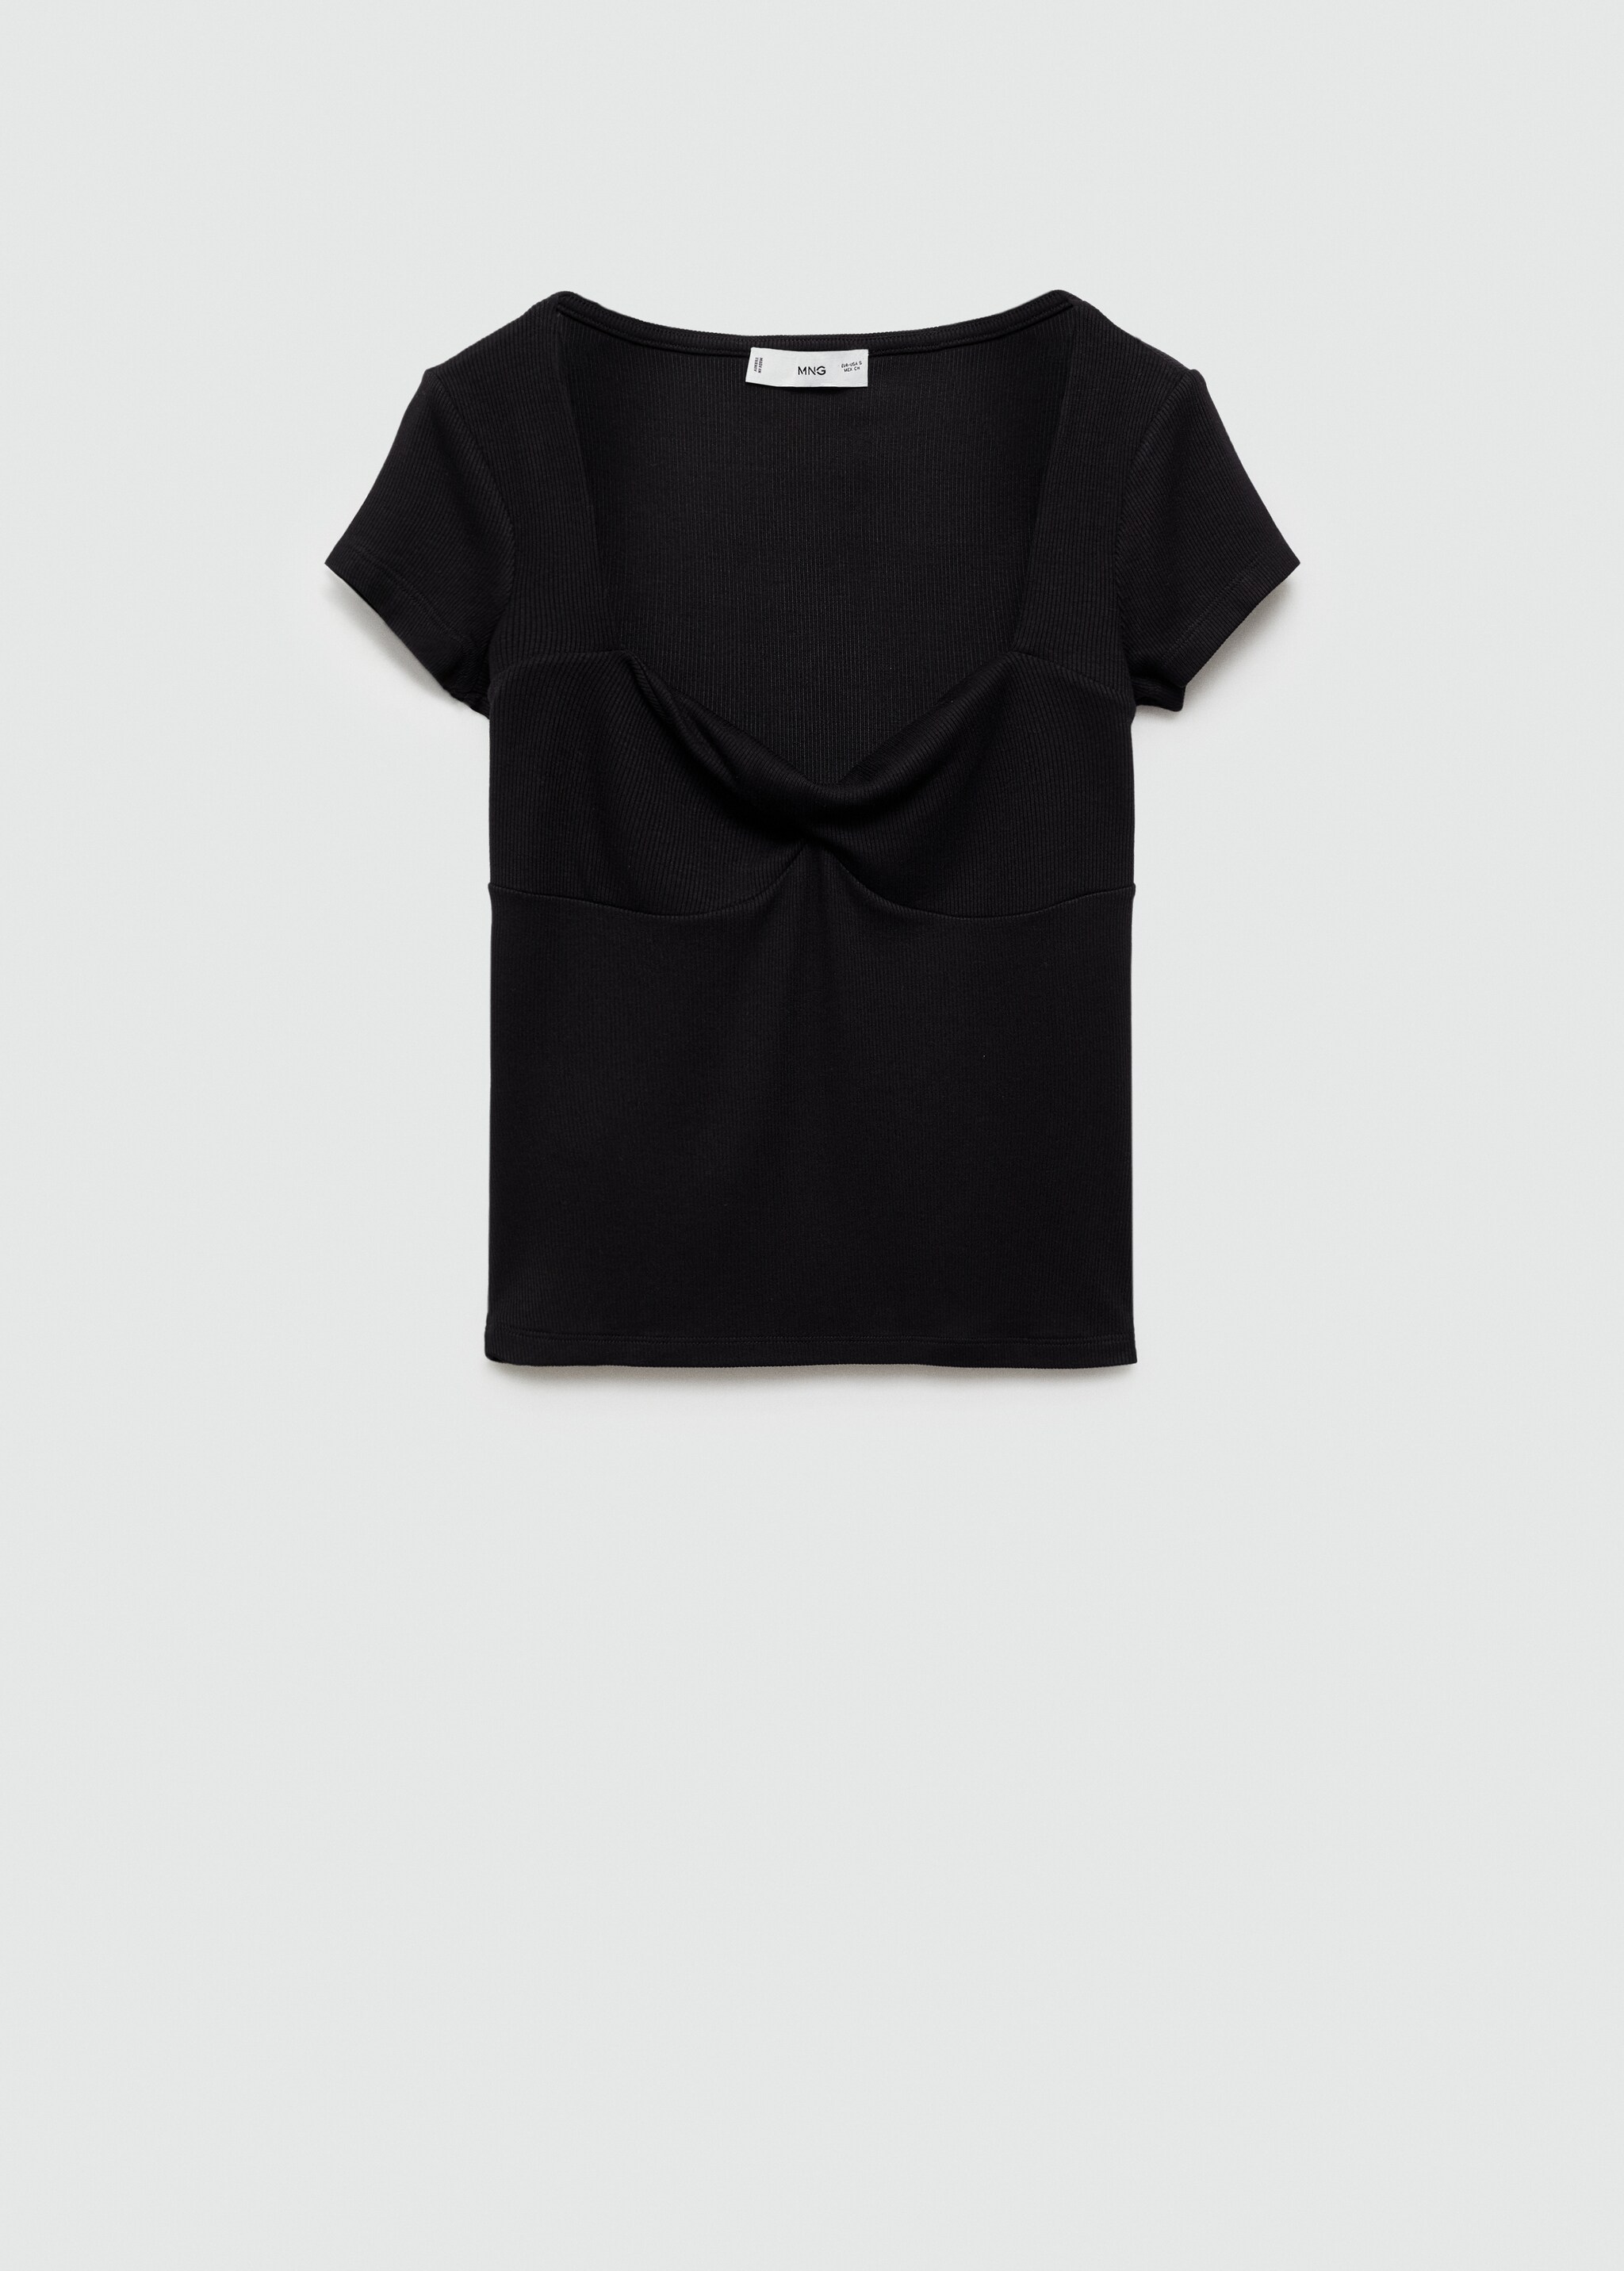 Drape yakalı tişört - Modelsiz ürün